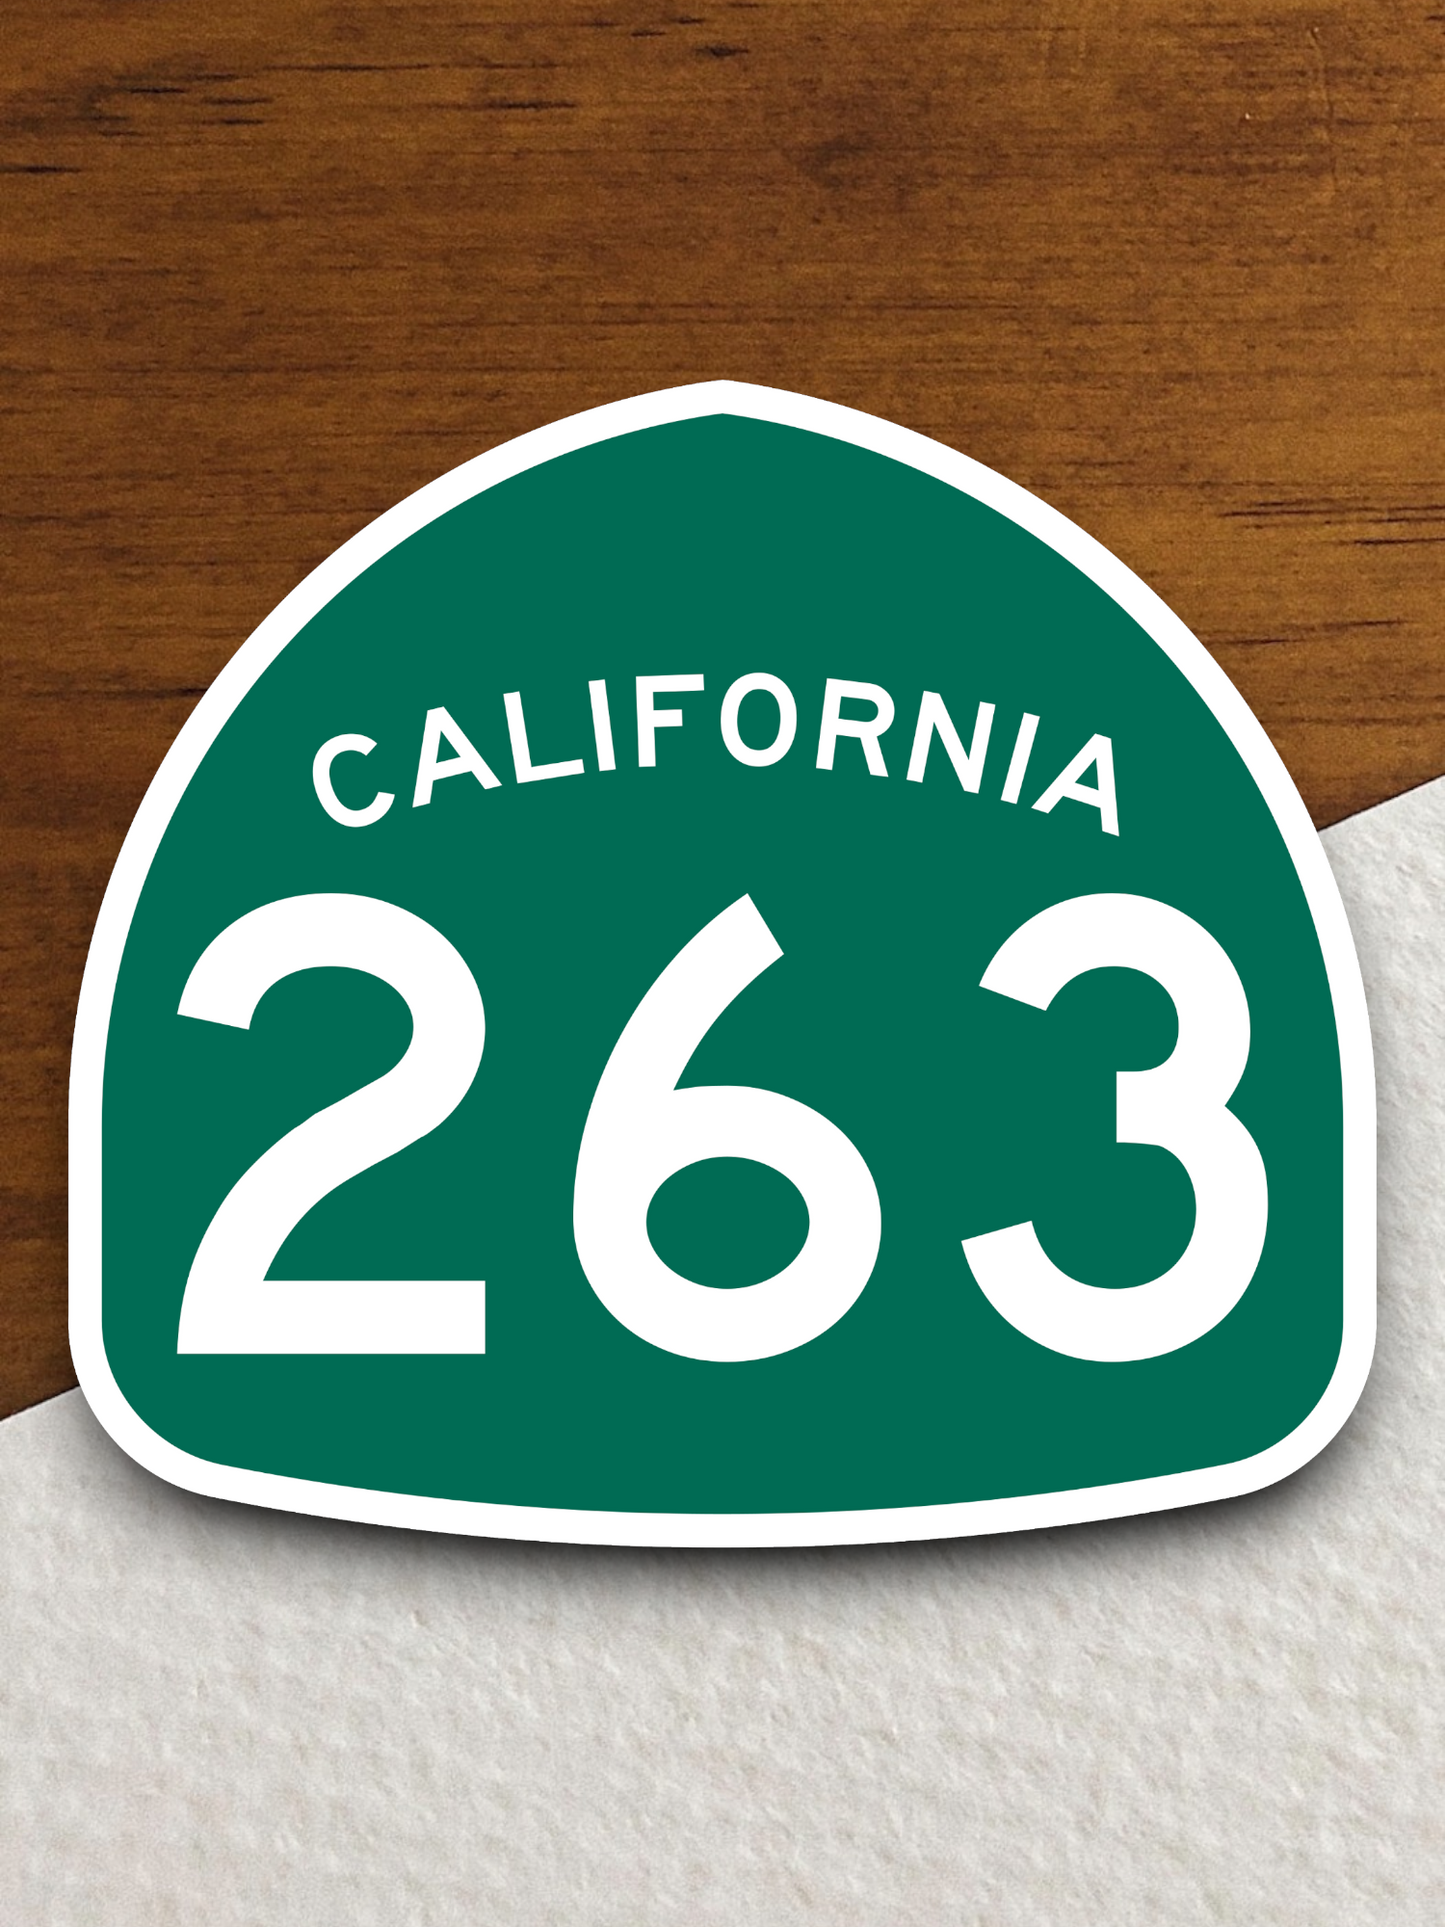 California State Route 263 Sticker